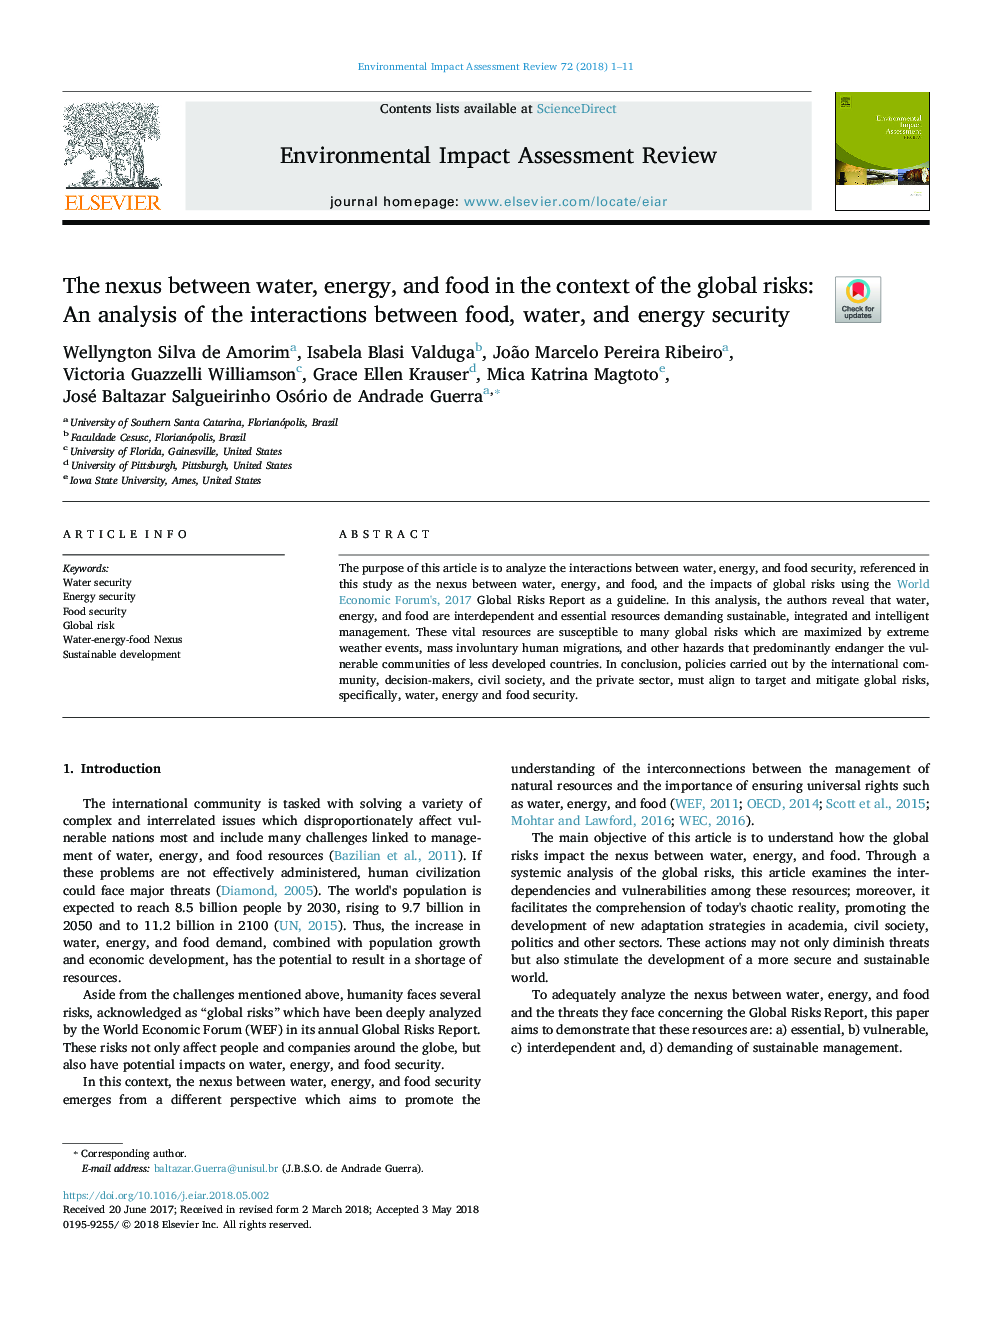 رابطه بین آب، انرژی و مواد غذایی در زمینه خطرات جهانی: تجزیه و تحلیل تعاملات میان غذا، آب و امنیت انرژی 